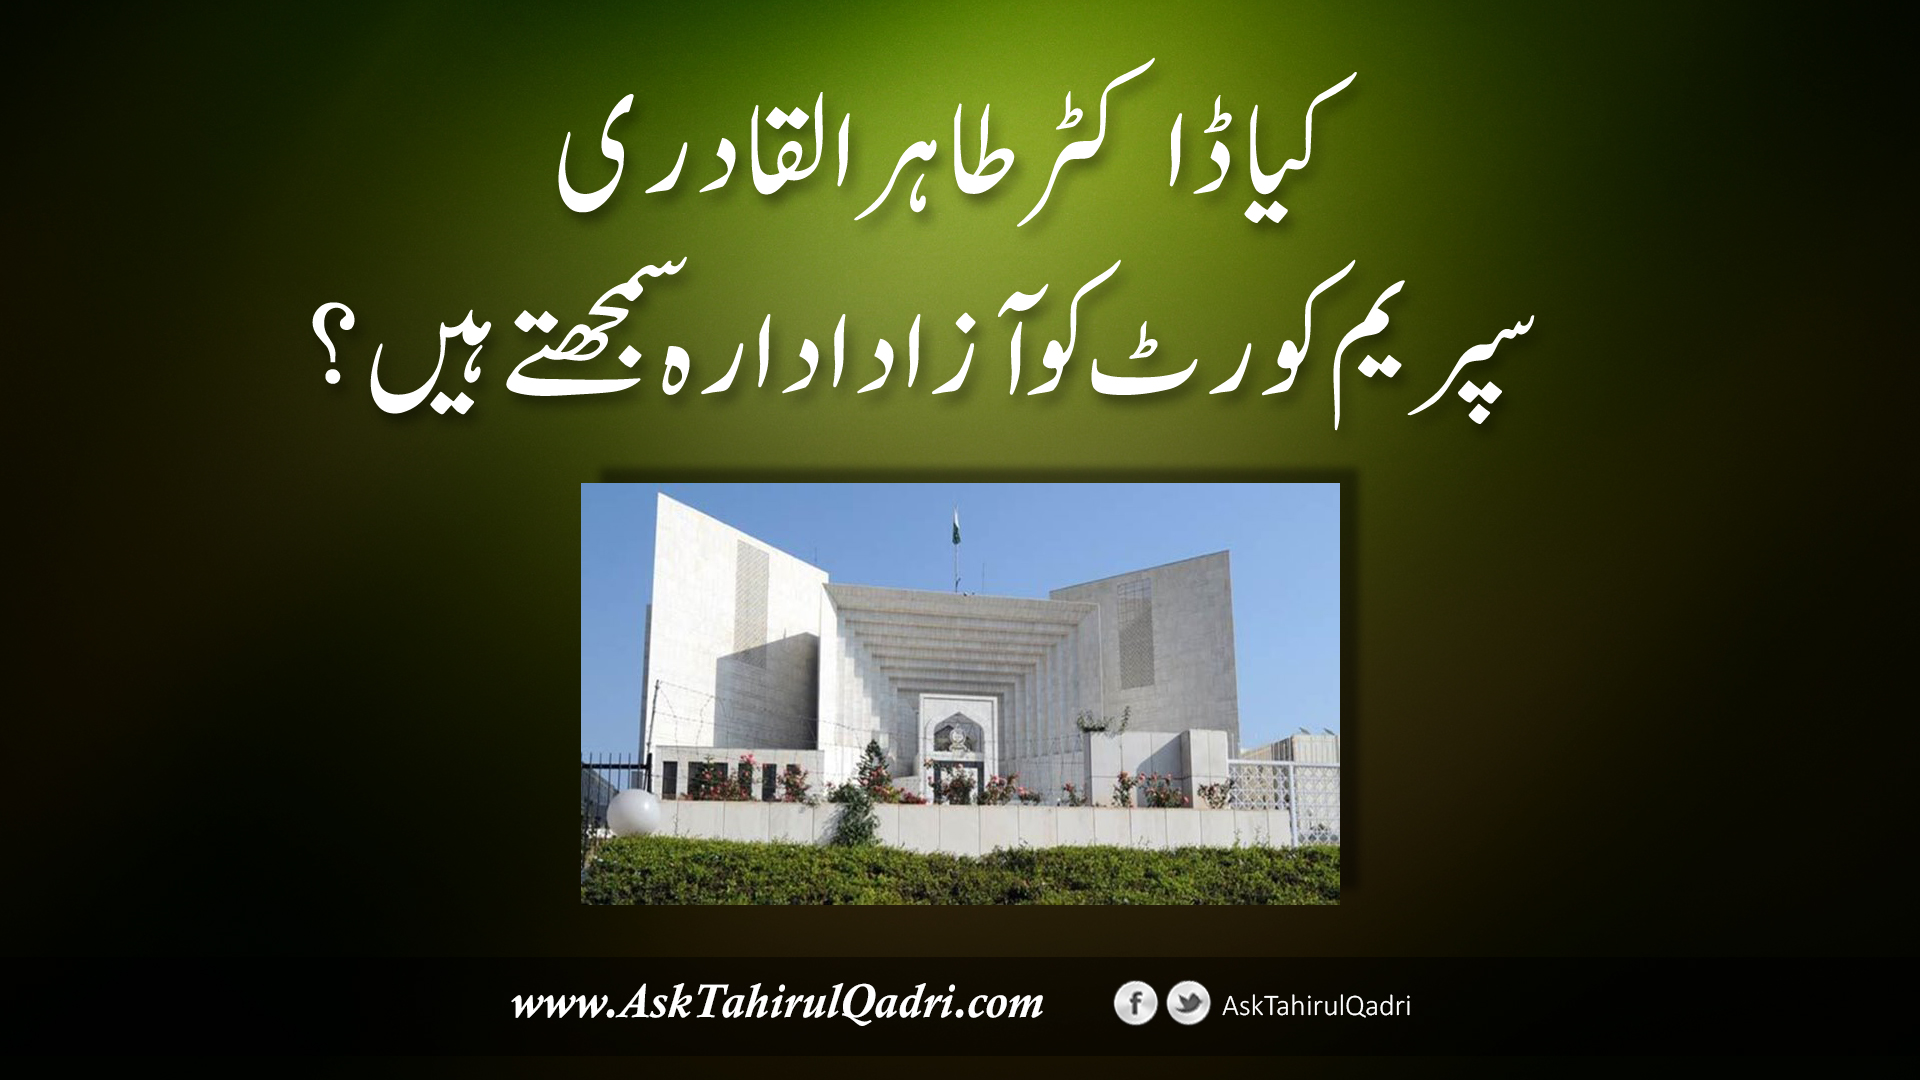 kya Dr.Tahir ul Qadri Supreme Court ko azad idaara samajte hain?